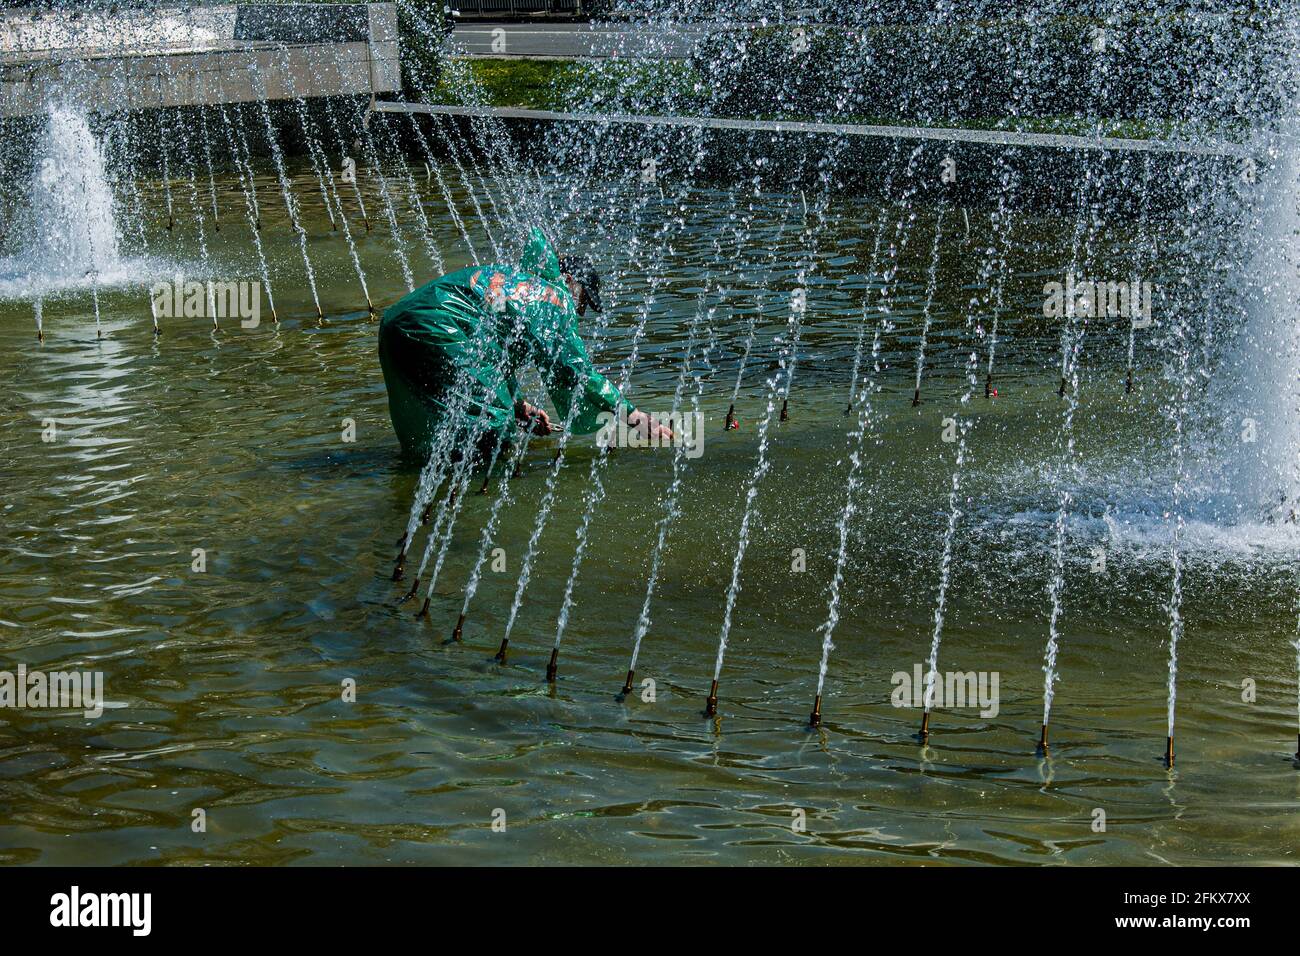 Dnepropetrovsk, Ucraina - 01.05.2021: I servizi municipali regolano le fontane prima del caldo estivo. Un operaio vestito ripara una fontana della città. Foto Stock